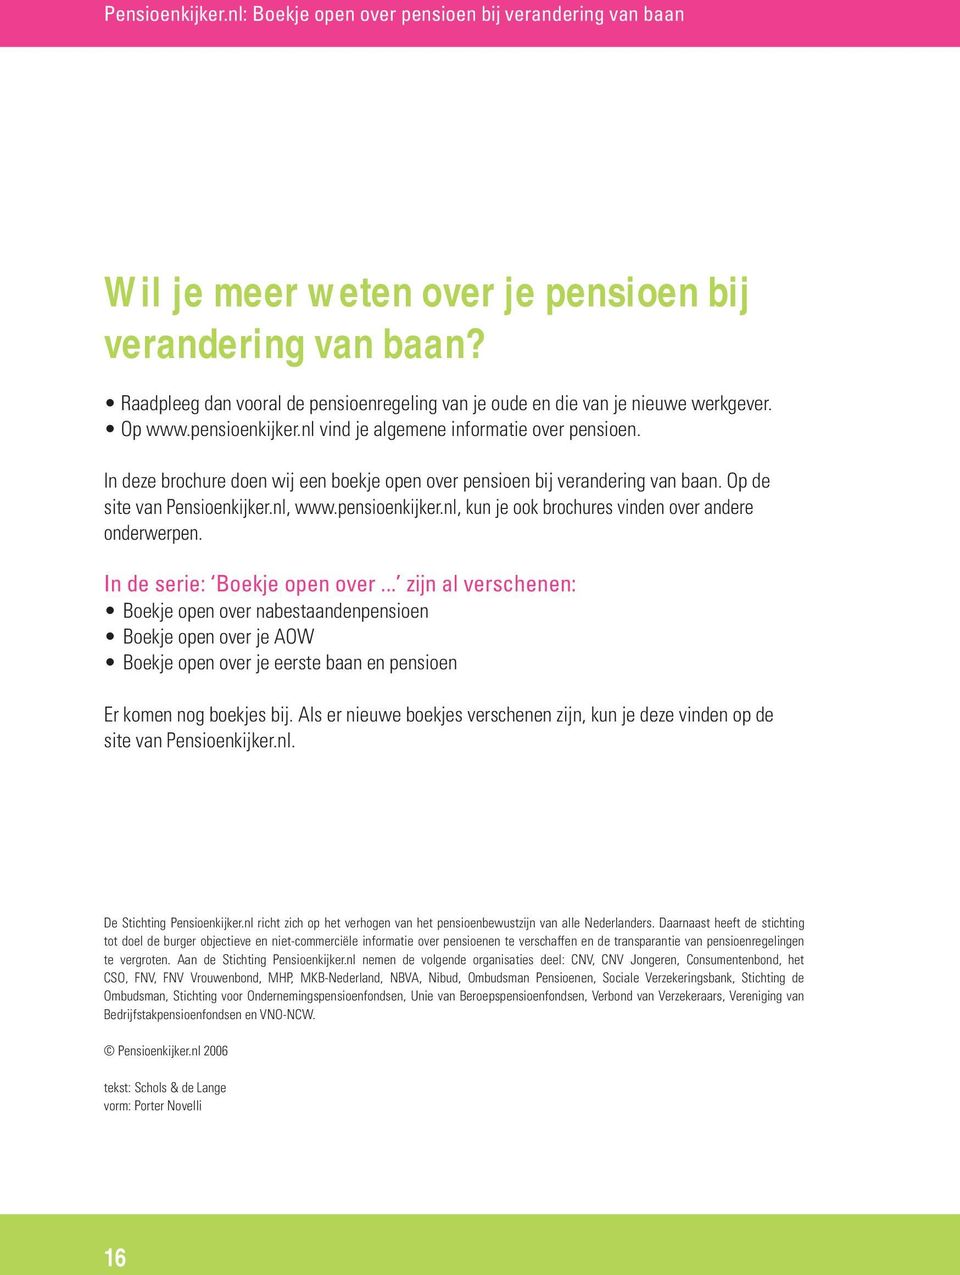 In deze brochure doen wij een boekje open over pensioen bij verandering van baan. Op de site van Pensioenkijker.nl, www.pensioenkijker.nl, kun je ook brochures vinden over andere onderwerpen.